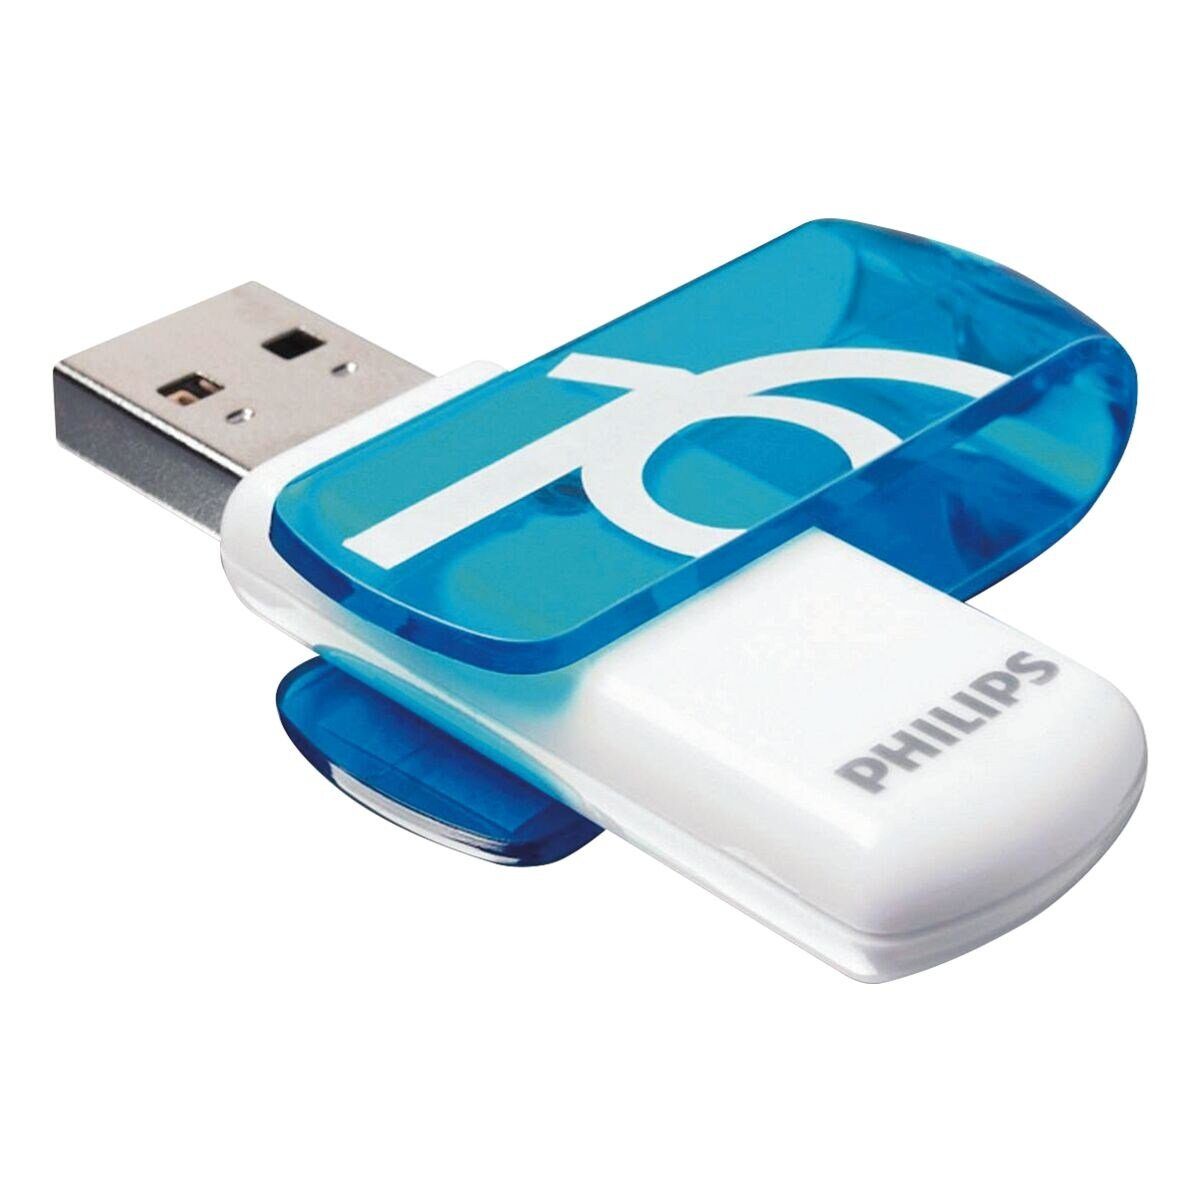 Philips Vivid USB-Stick (Lesegeschwindigkeit 14 MB/s, mit LED-Anzeige)